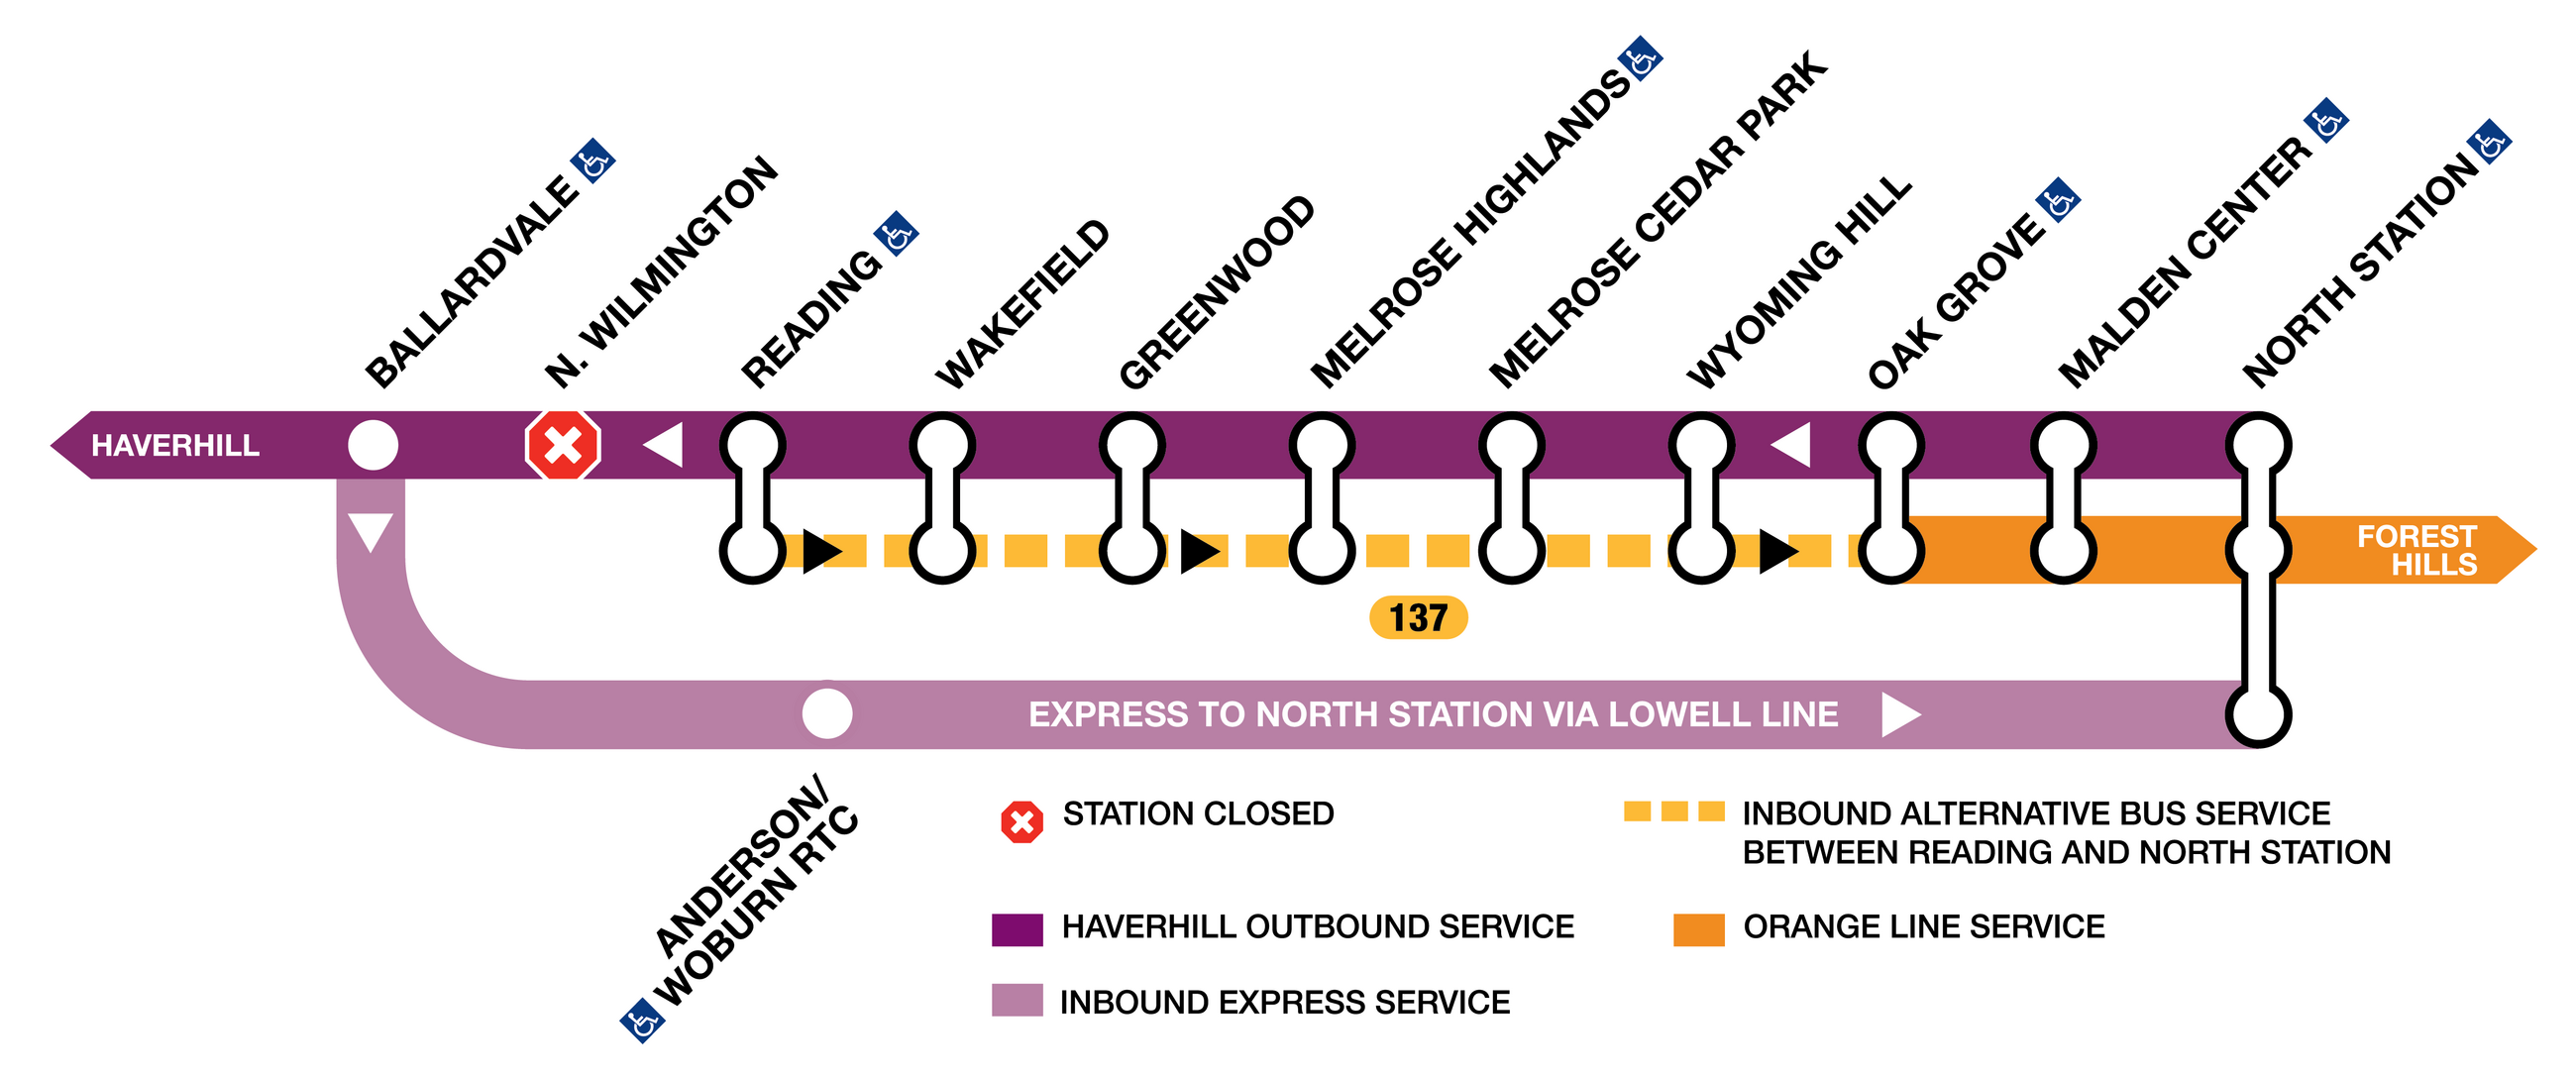 Orange Line diversion diagram with Lowell Line diversion